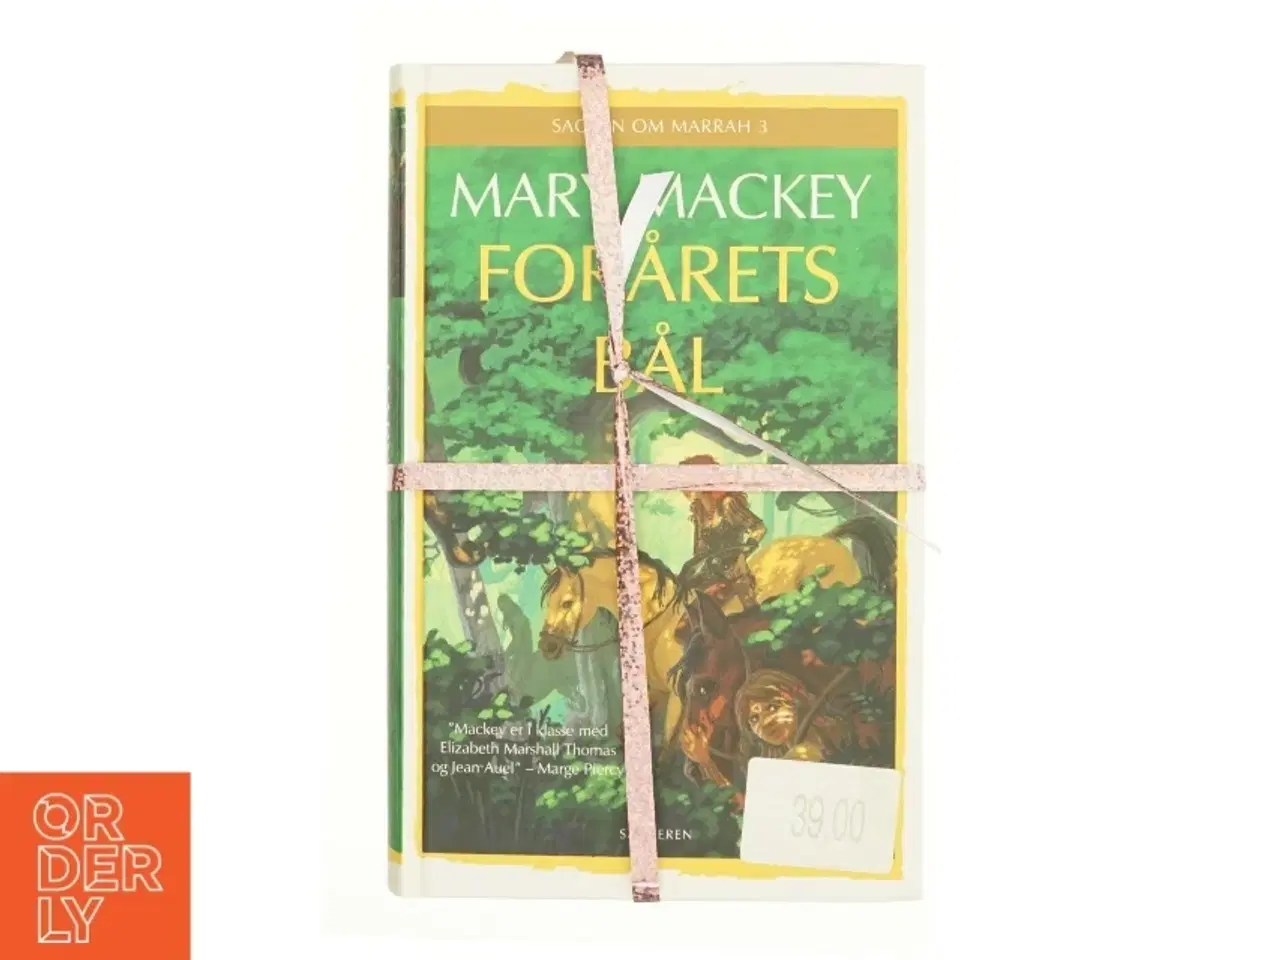 Billede 1 - Forårets bål af Mary Mackey (ialt 3 bøger)